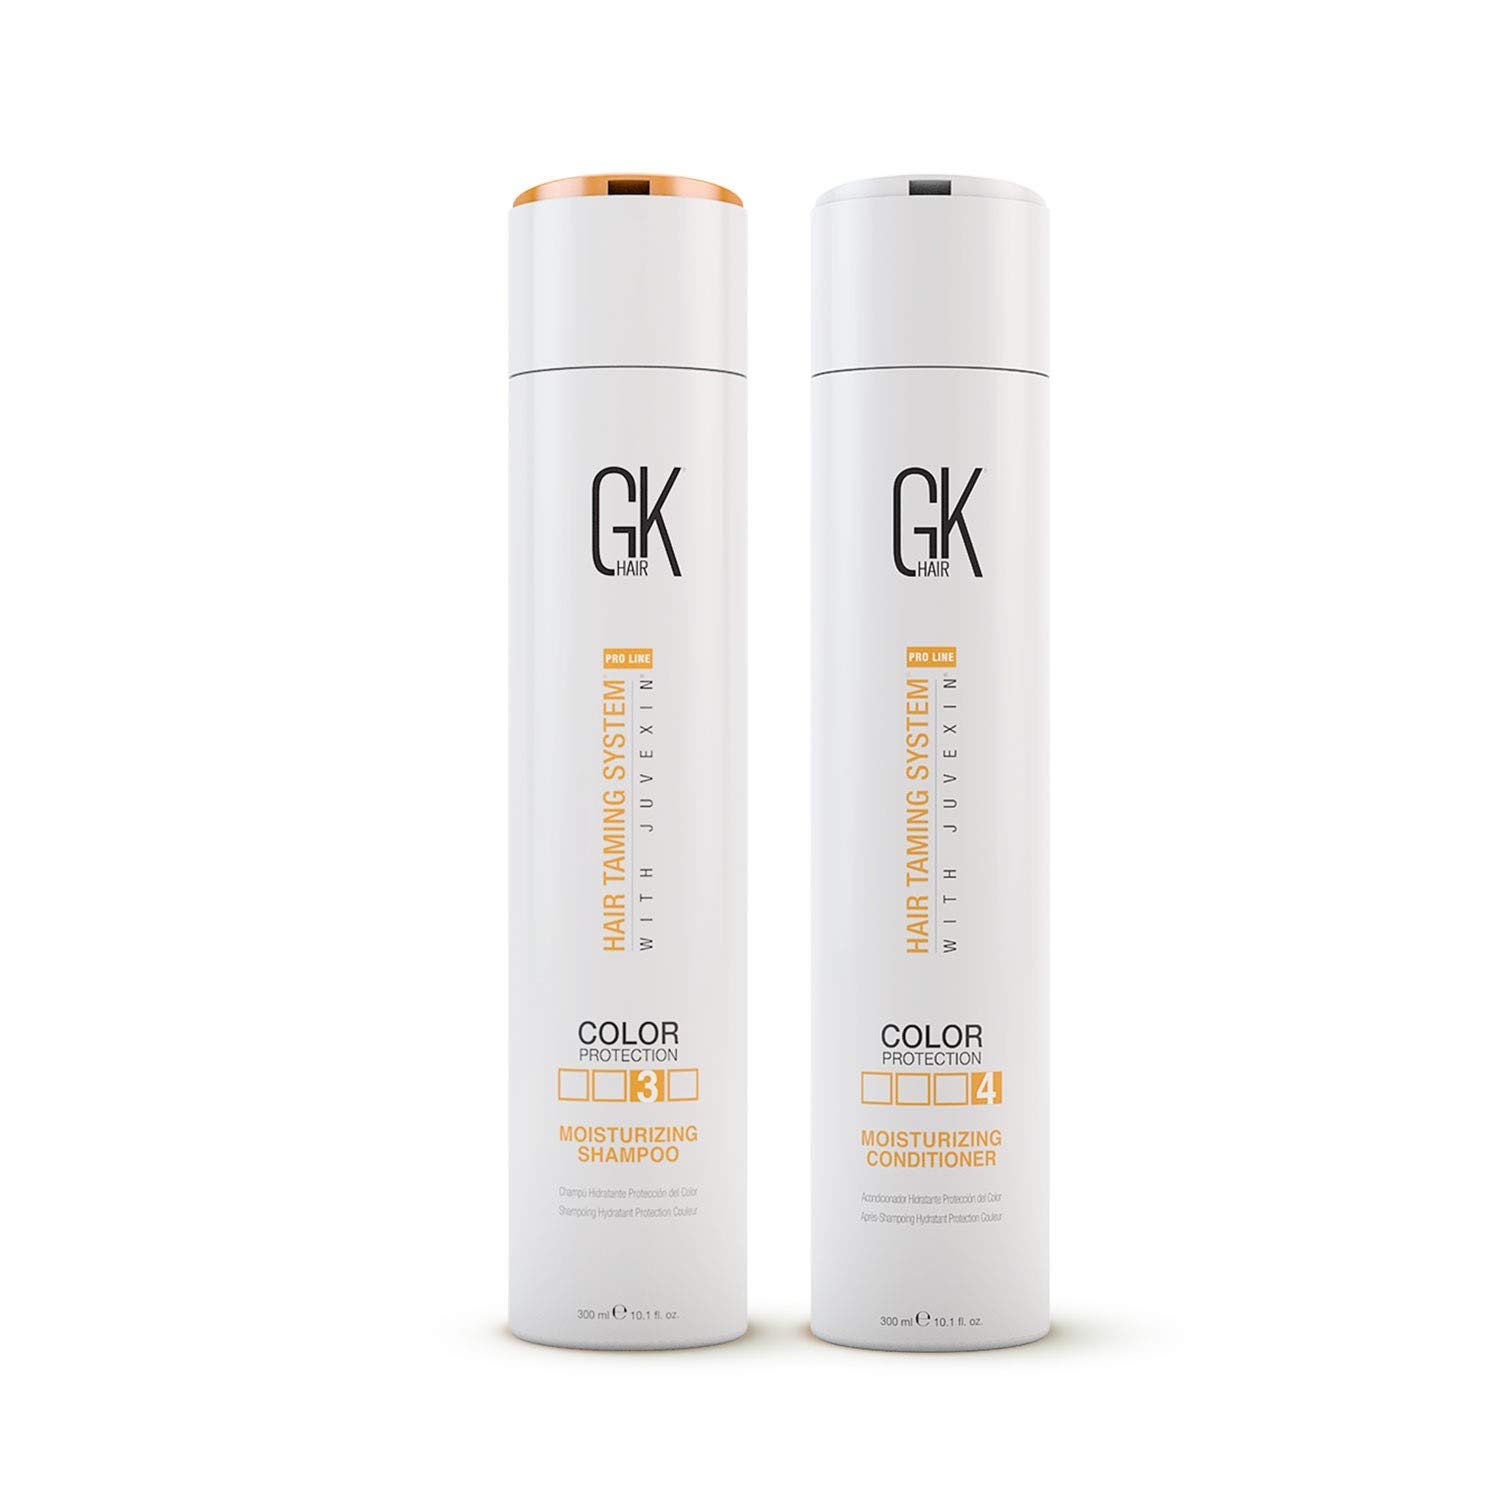 GKHair GK Hair, šampon a kondicionér na vlasy pro barvené vlasy, 2x300 ml